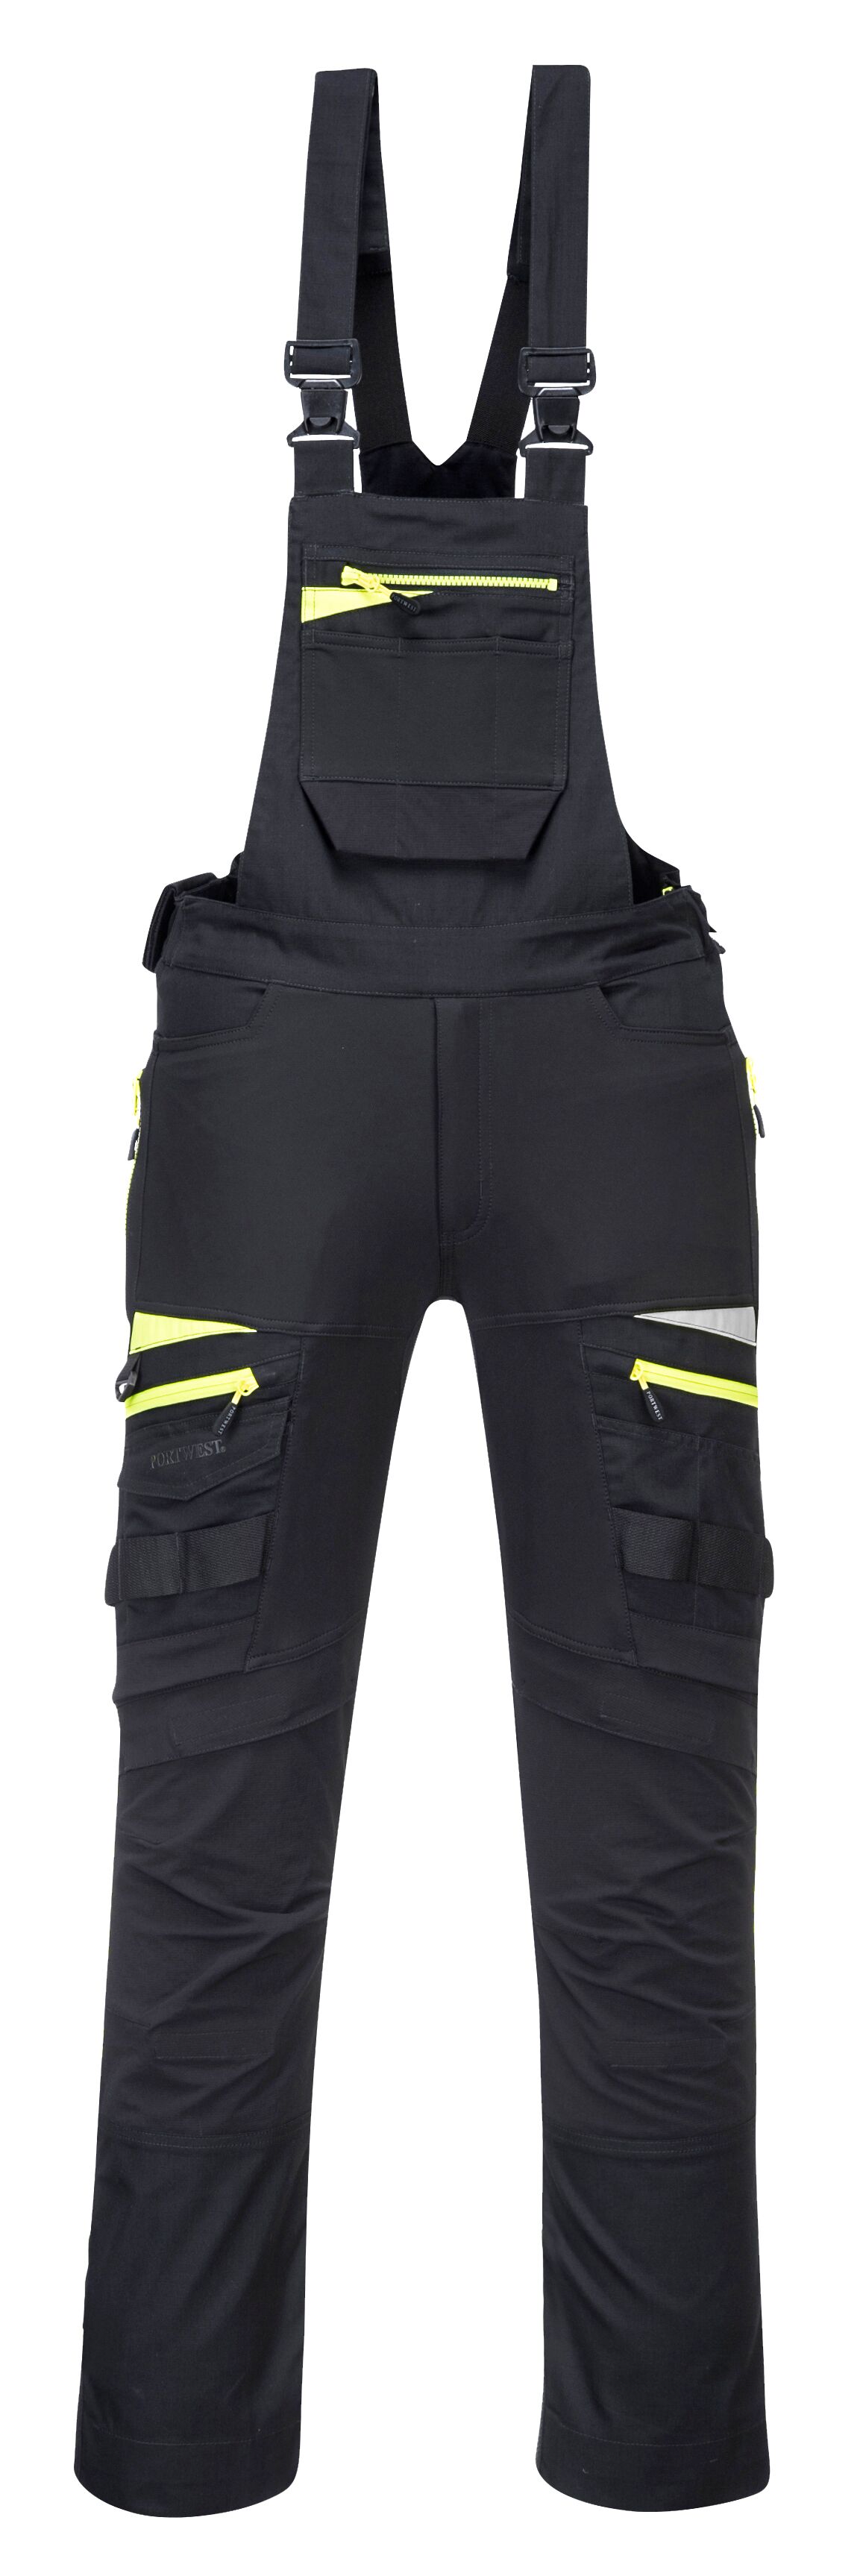 DX4 pracovní laclové kalhoty Barva: černá, Velikost: S